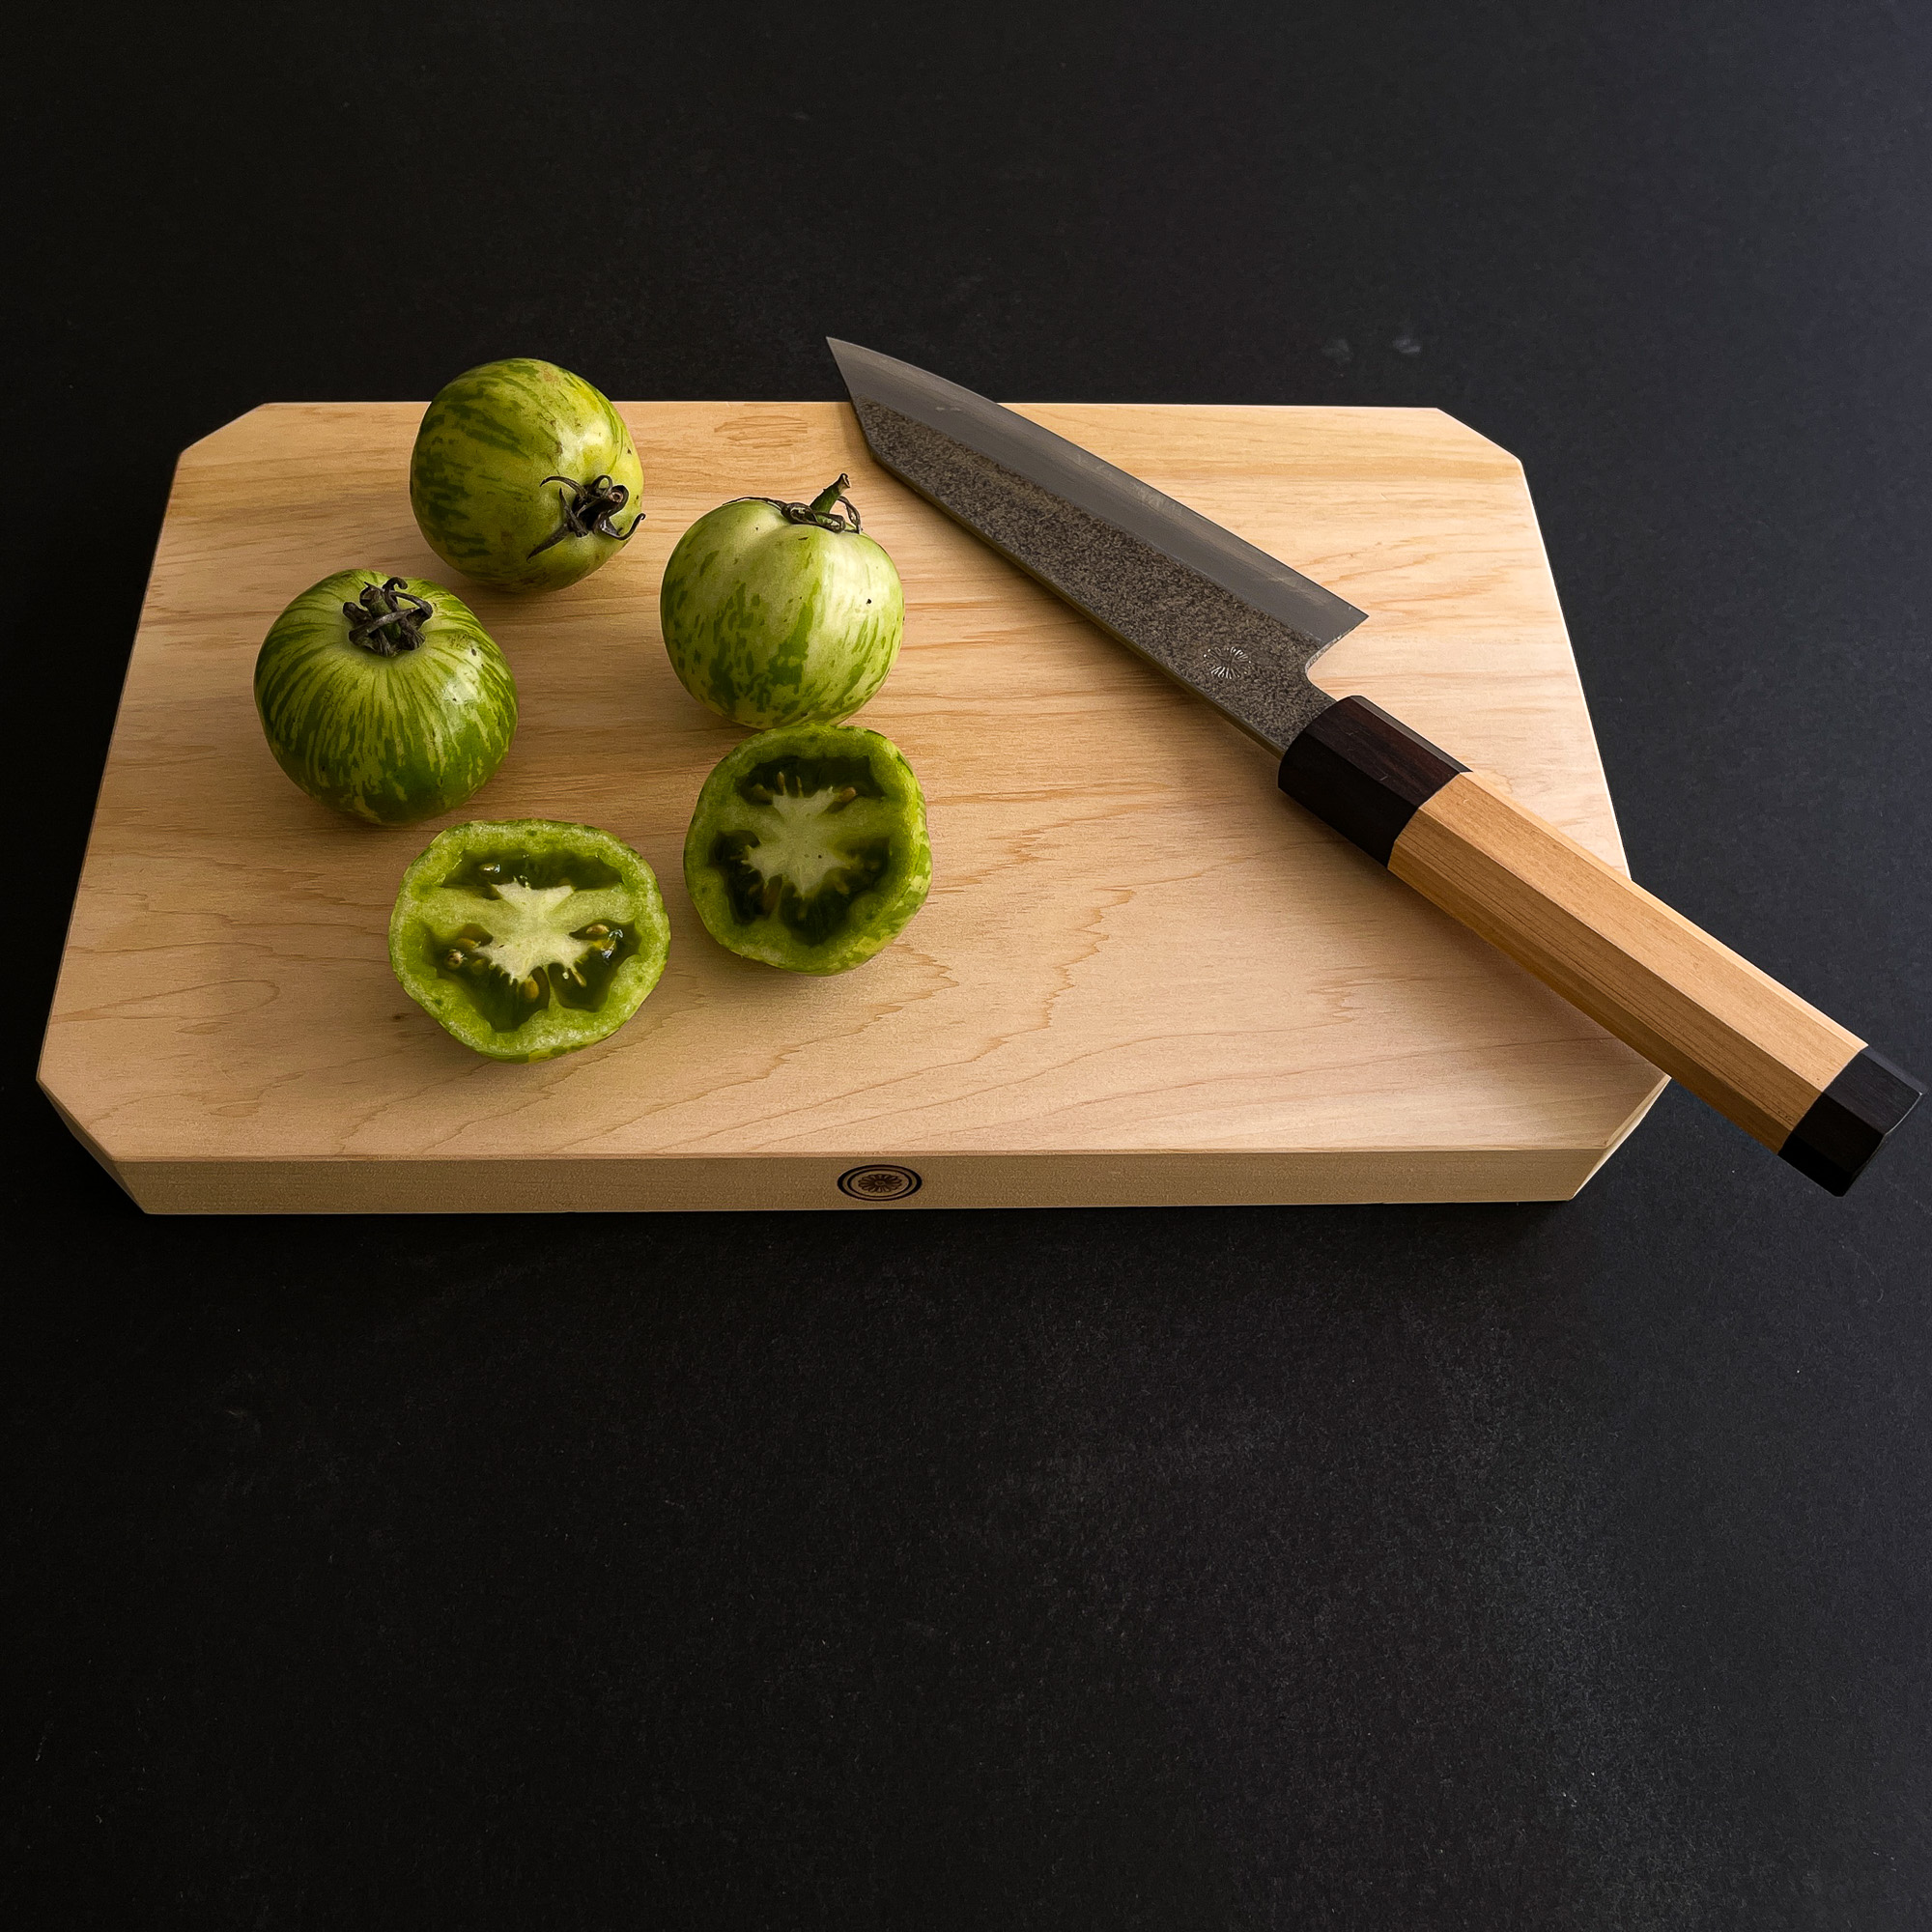 iNeibo Kitchen Premium Silicone Cutting board 